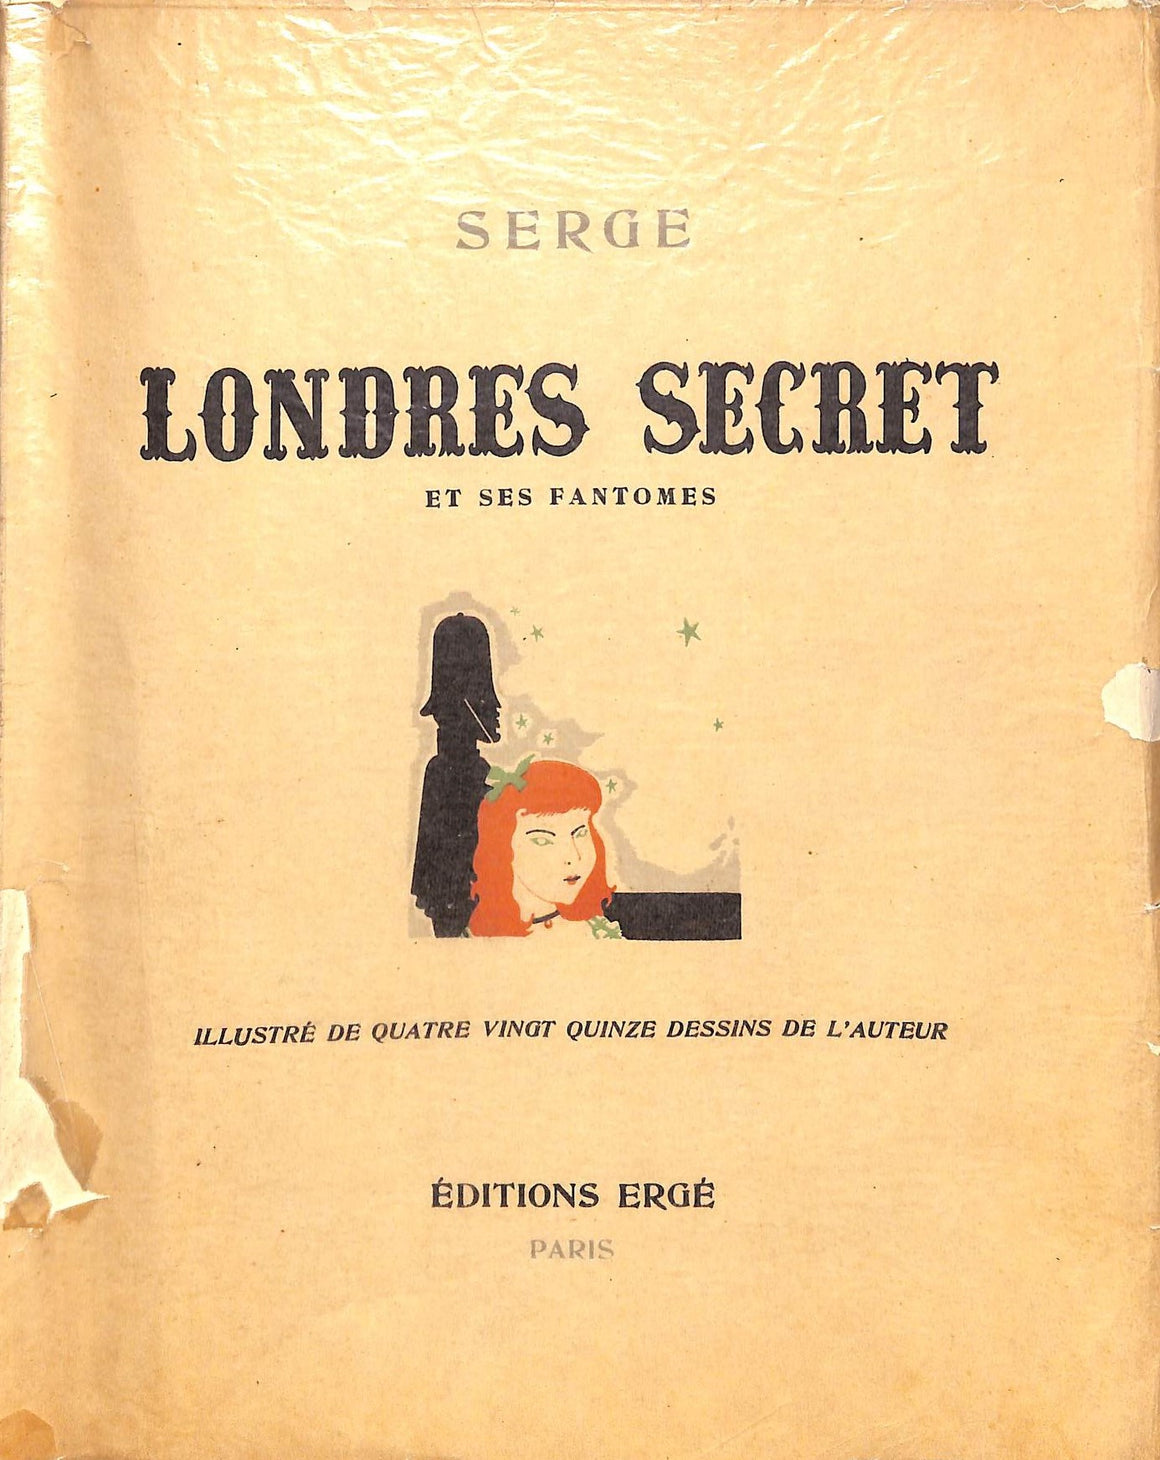 "Londres Secret et Ses Fantomes" Ltd Edition by Serge